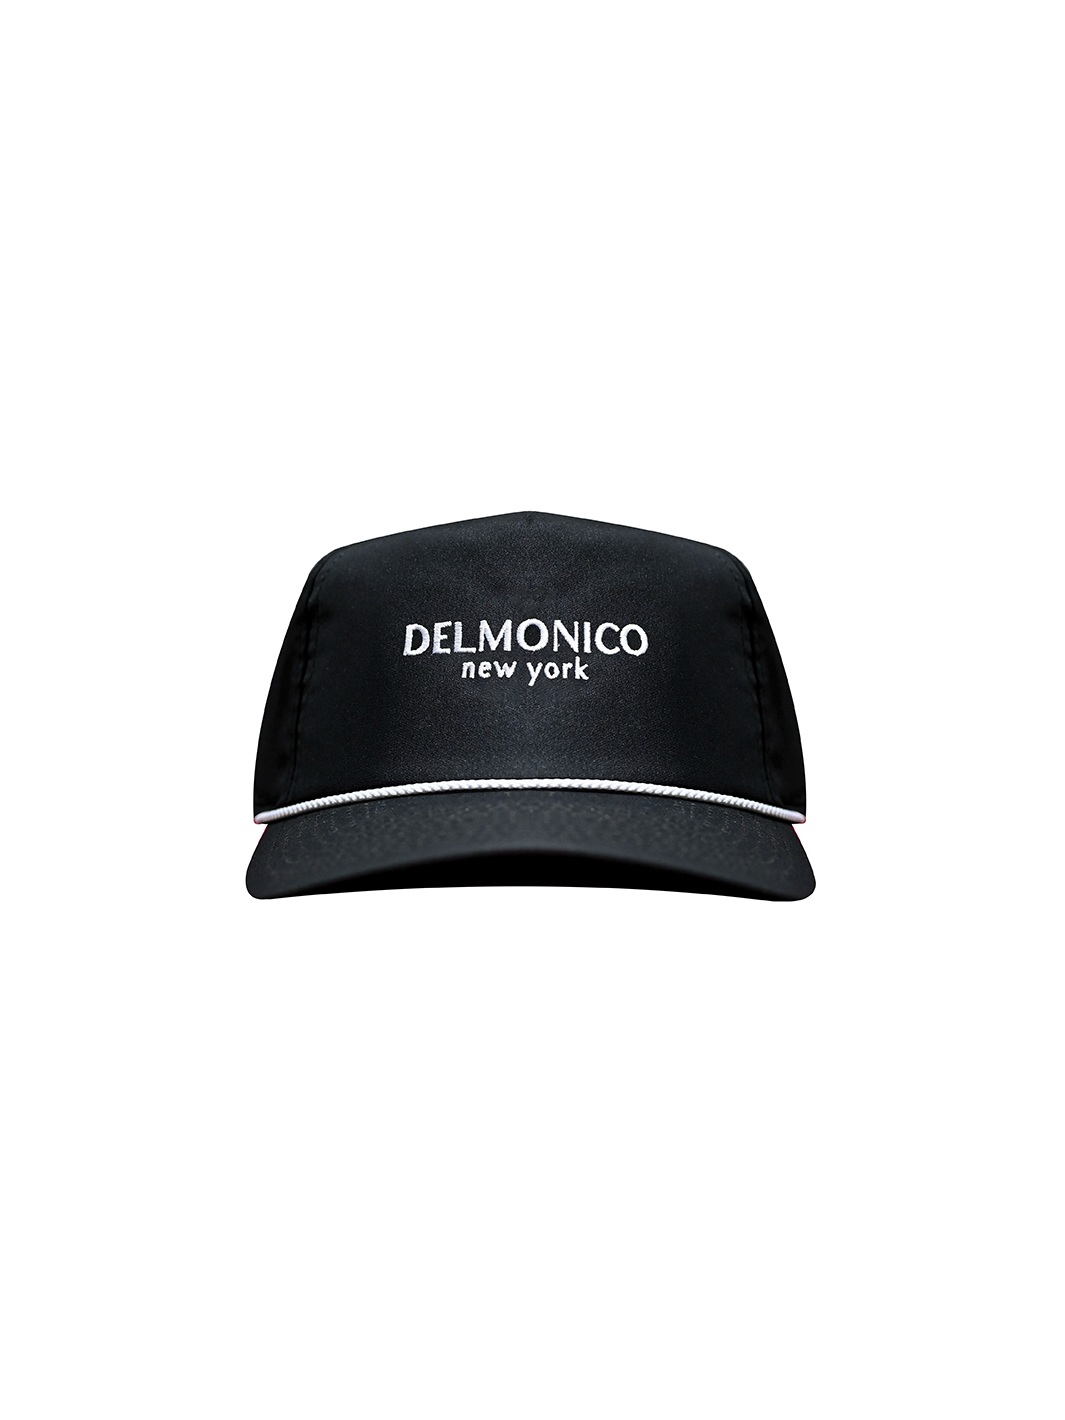 Collective – Delmonico NY